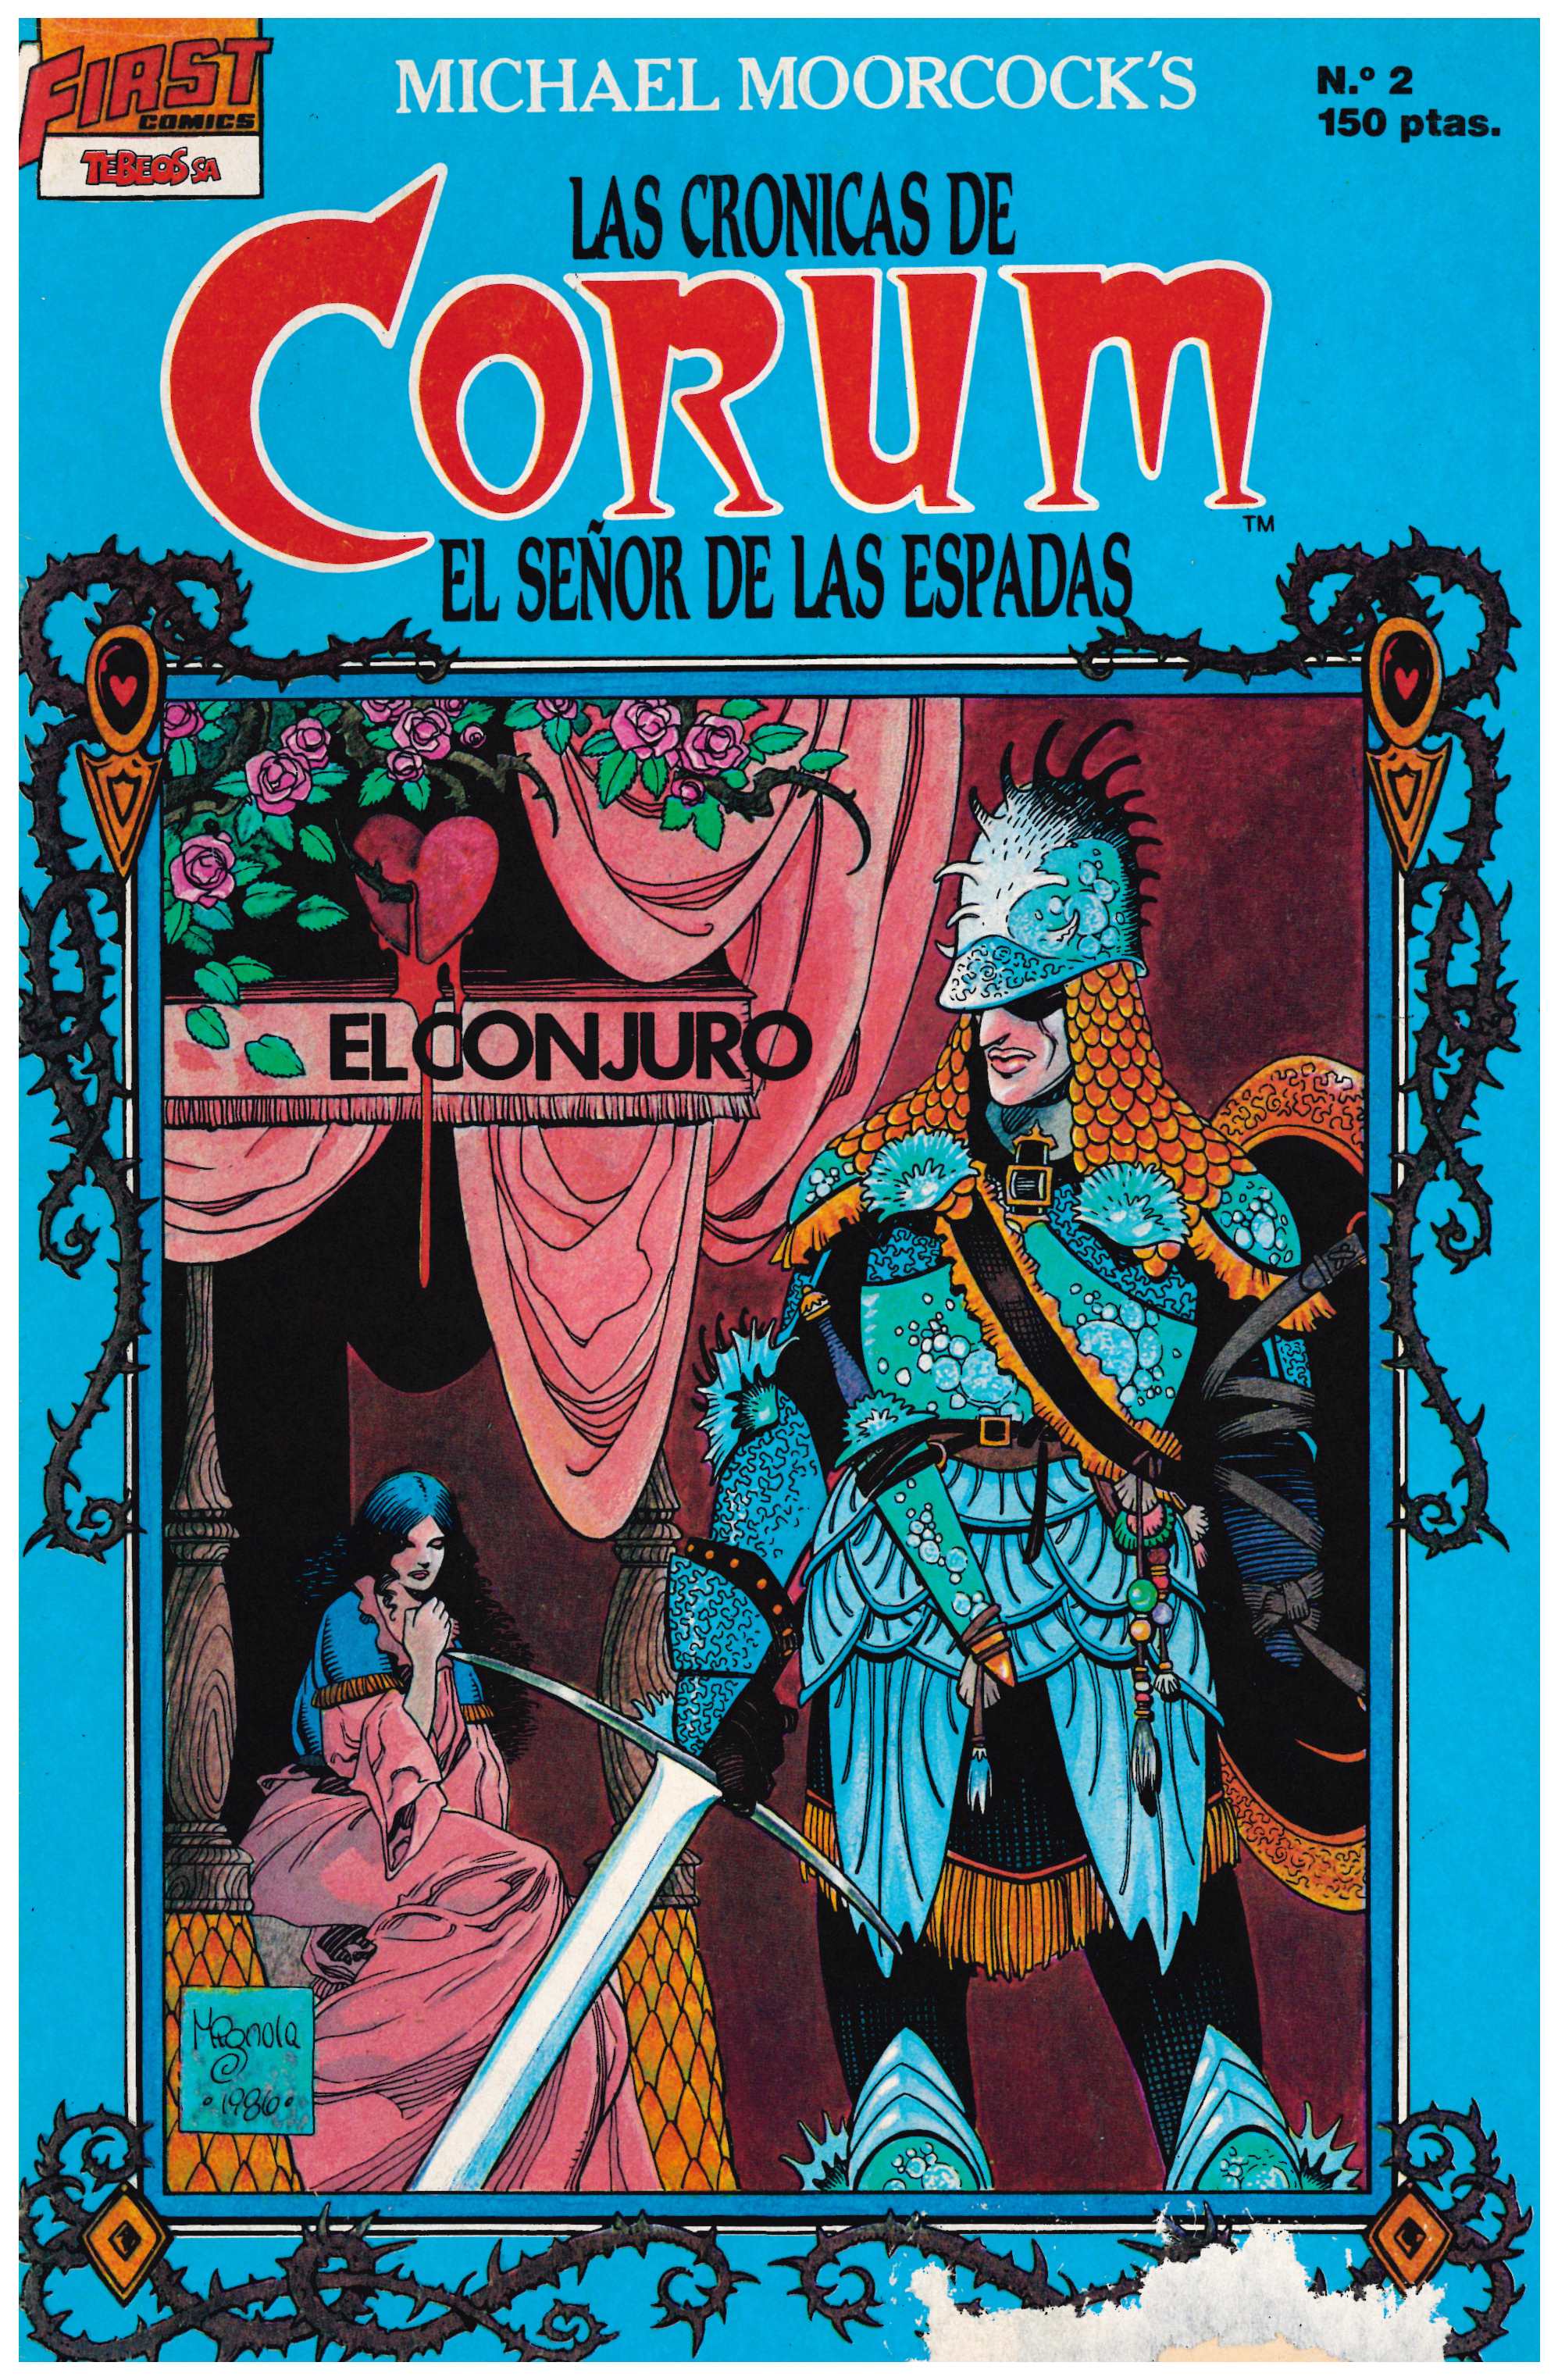 Las Crónicas de Corum. Ediciones B 1988. Nº 2